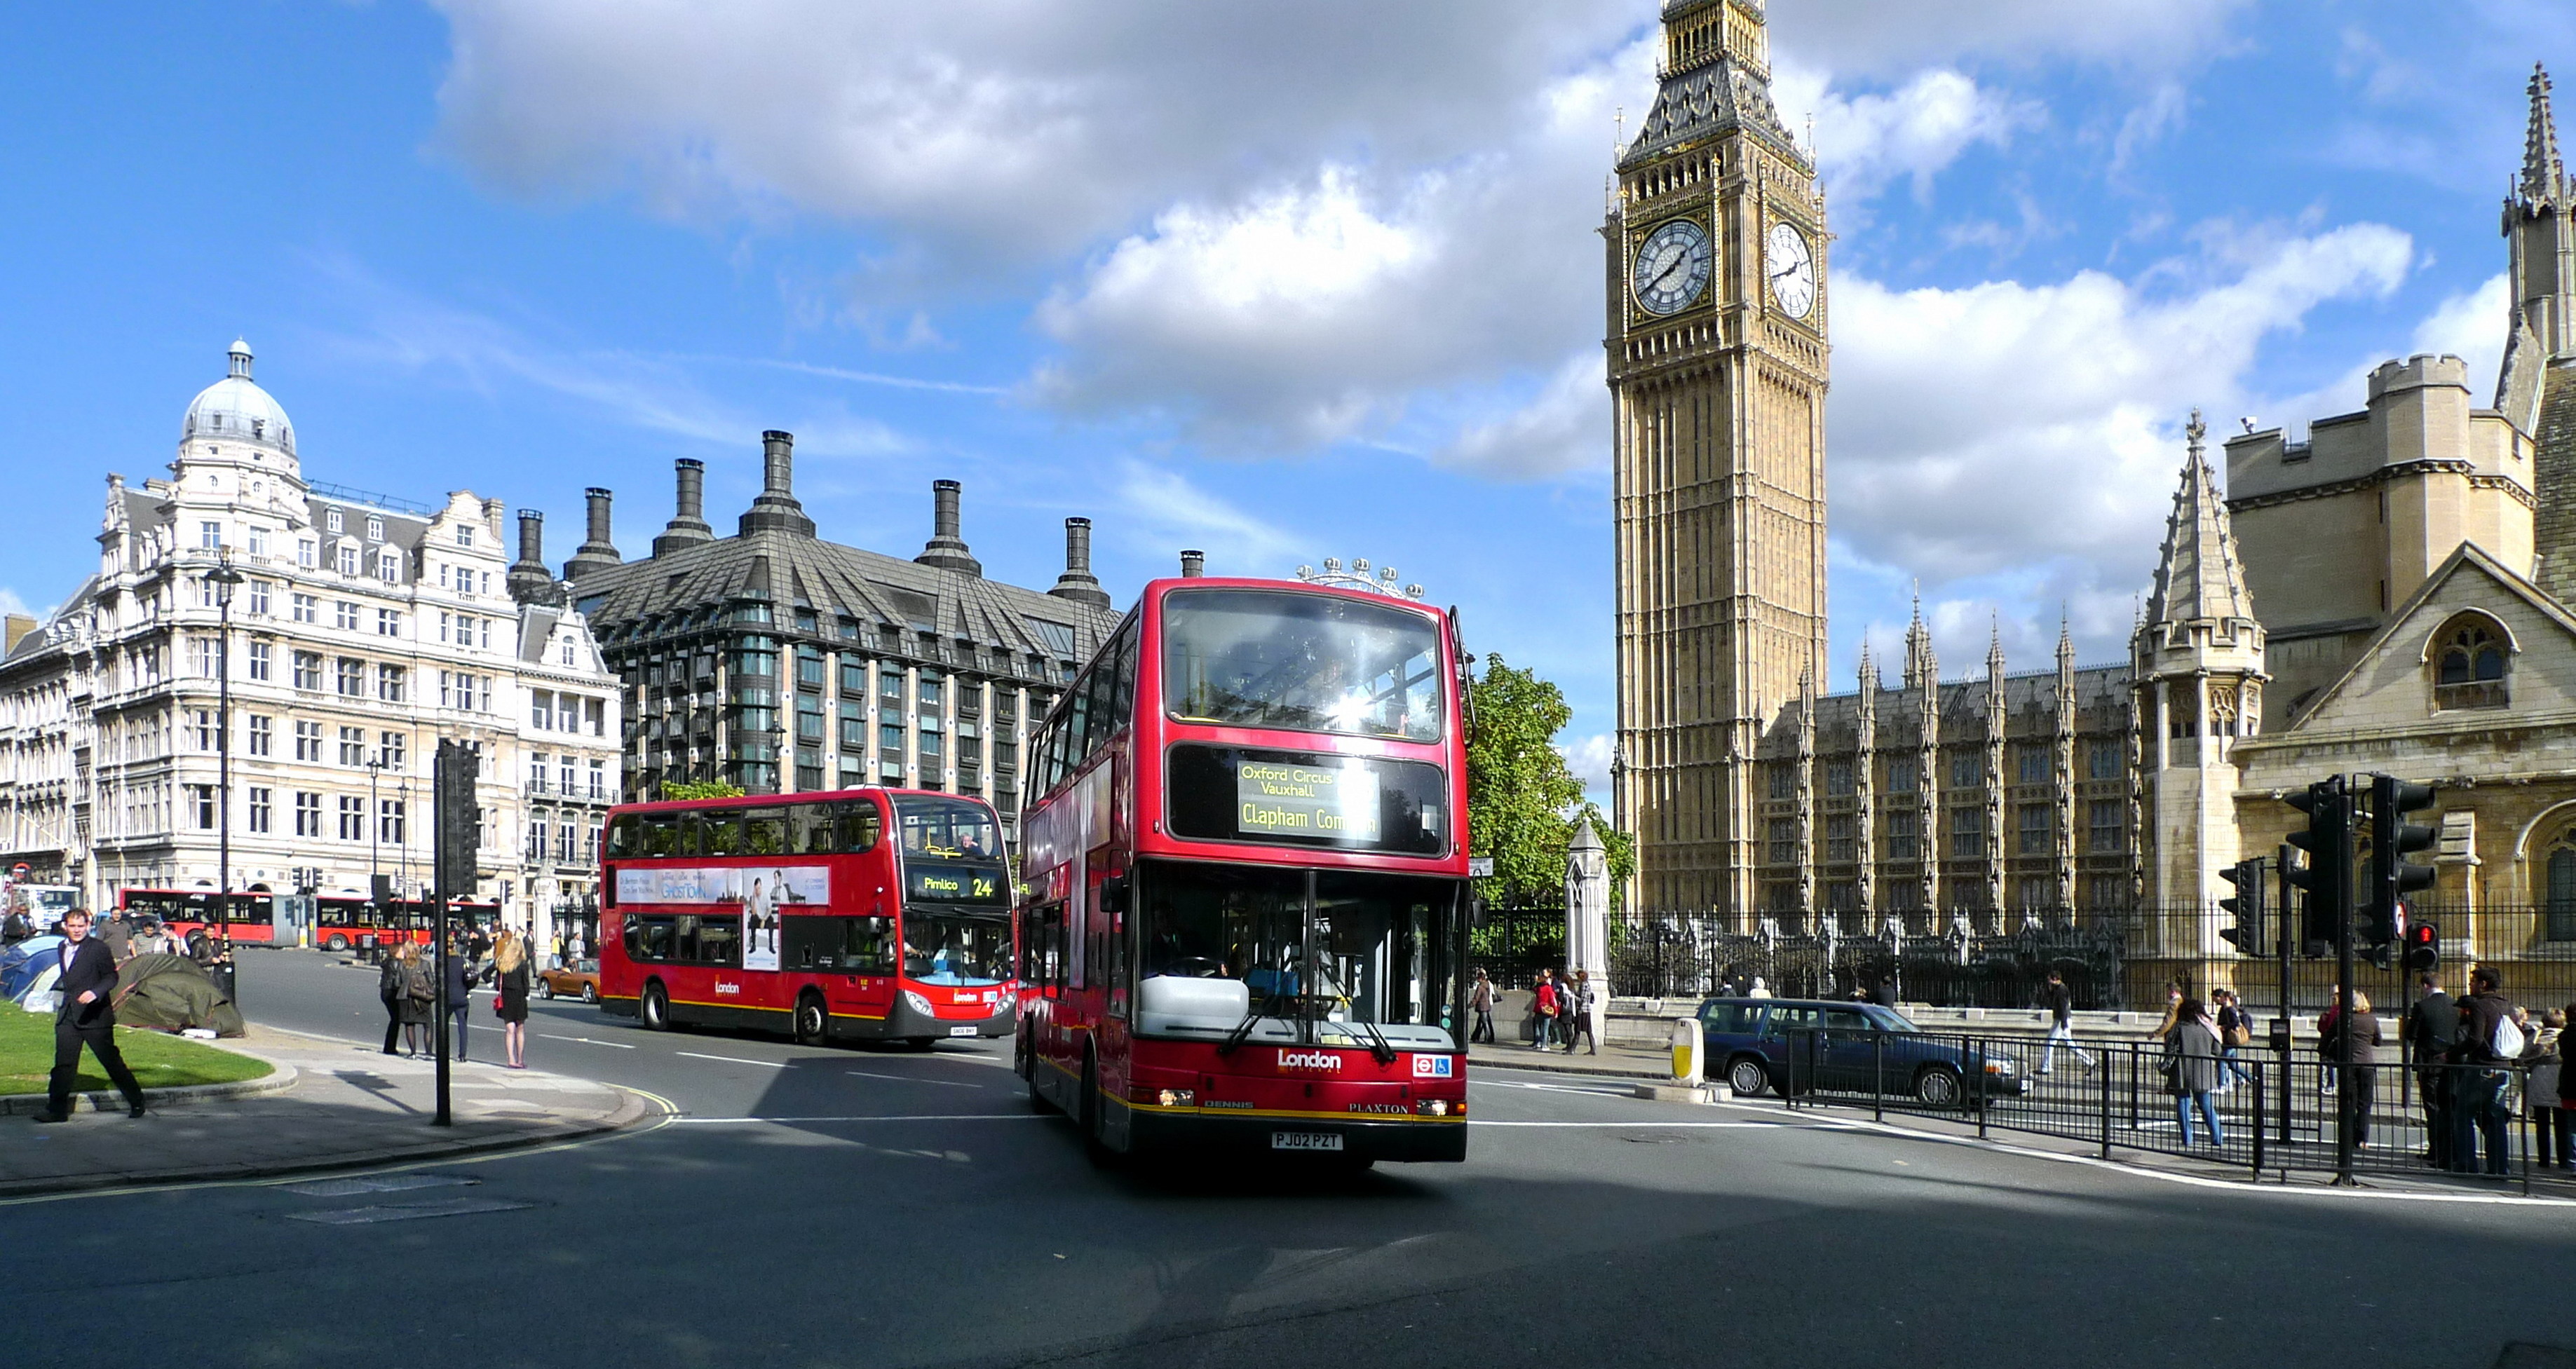 Направление лондона. Биг Бен (Великобритания). Лондон автобус Биг Бен. Оксфорд-стрит в Лондоне. Достопримечательности Лондона Биг Бен.